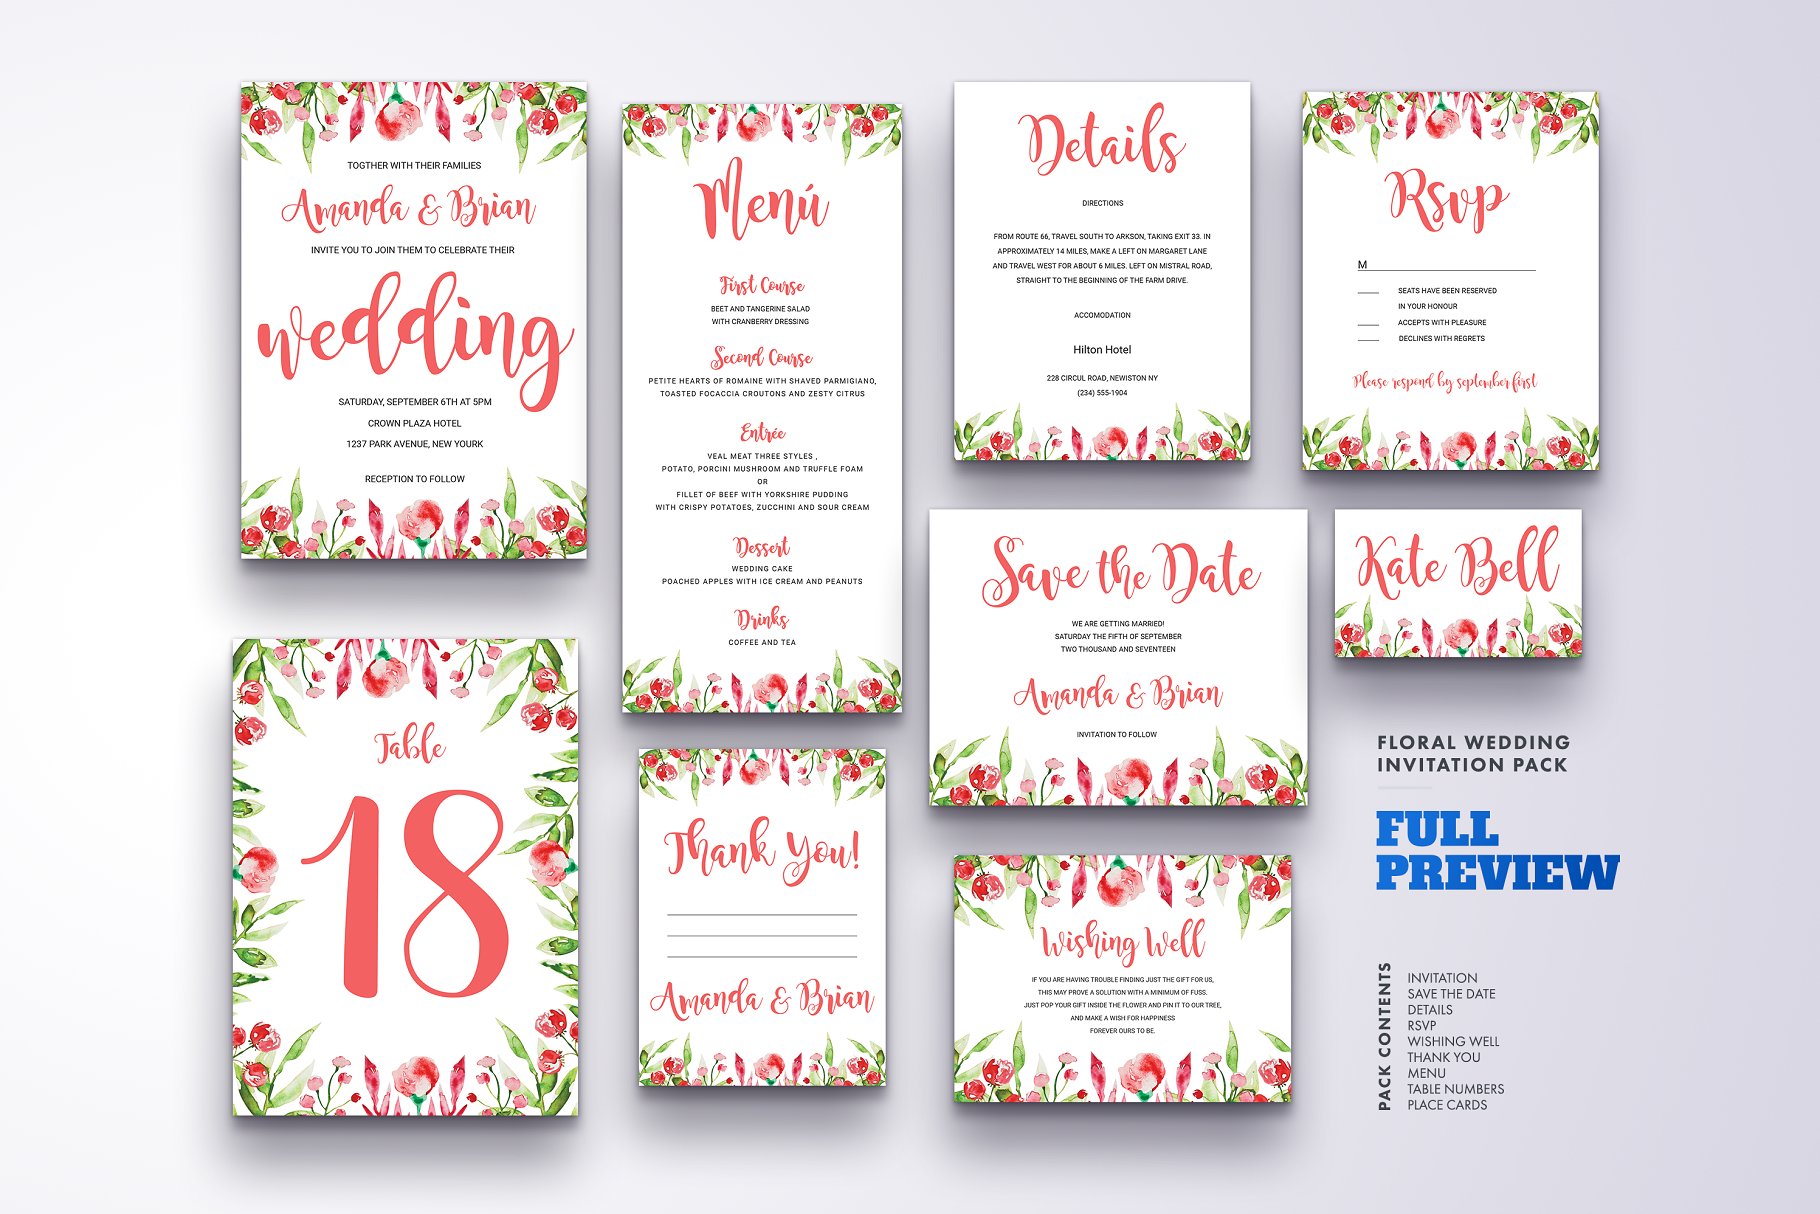 花卉配饰婚礼邀请物料设计模板合集 Floral Wedding Invitation Set Vol.7插图(1)